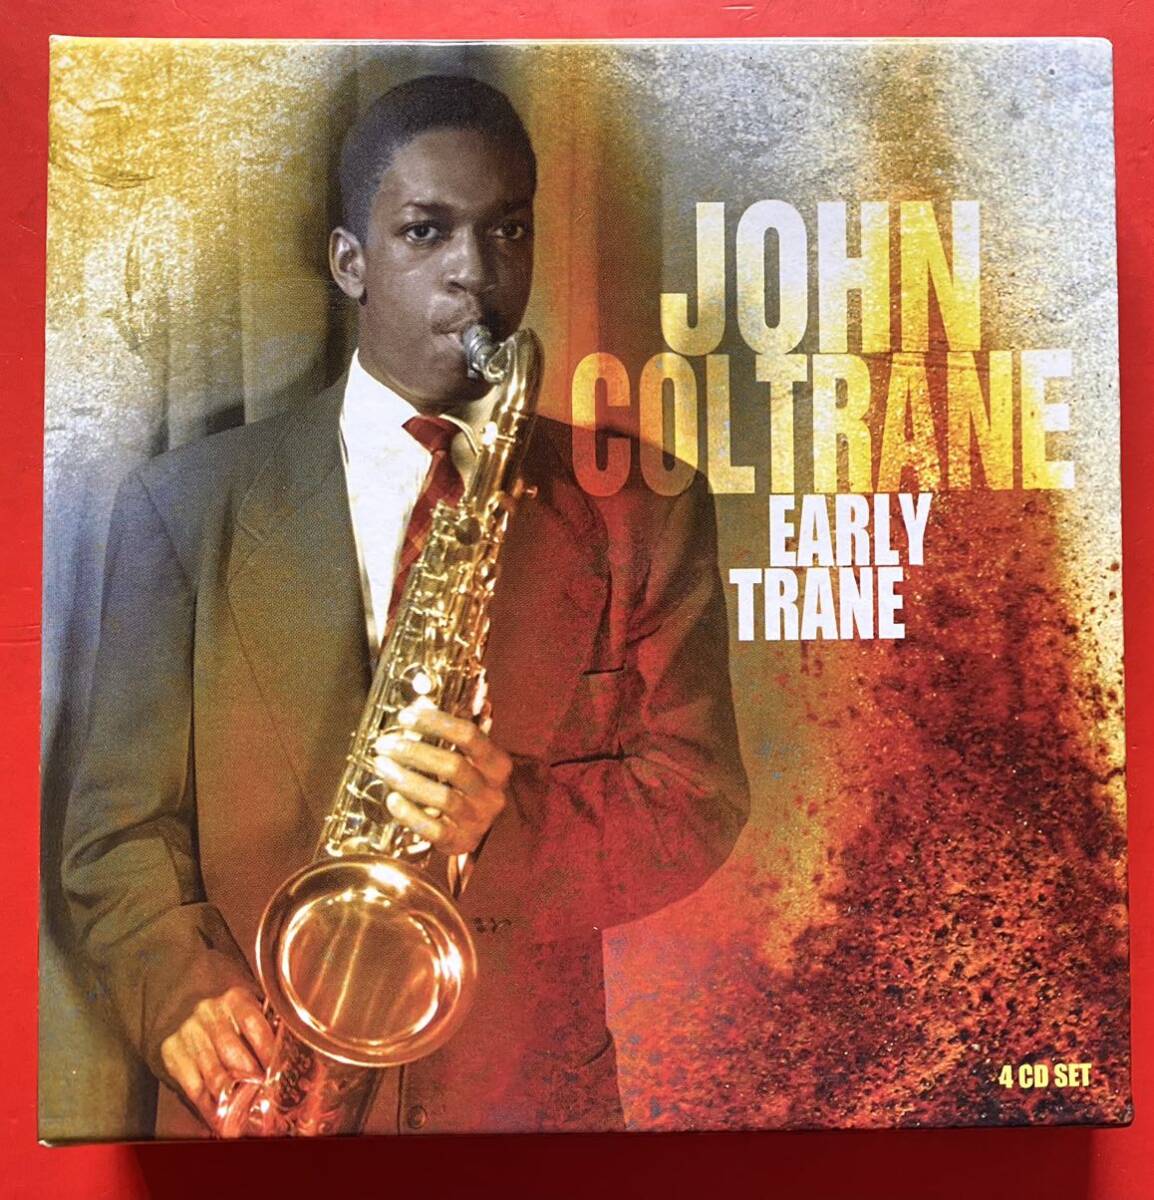 【美品4CD】JOHN COLTRANE「EARLY TRANE」ジョン・コルトレーン 輸入盤 [02070341]_画像1